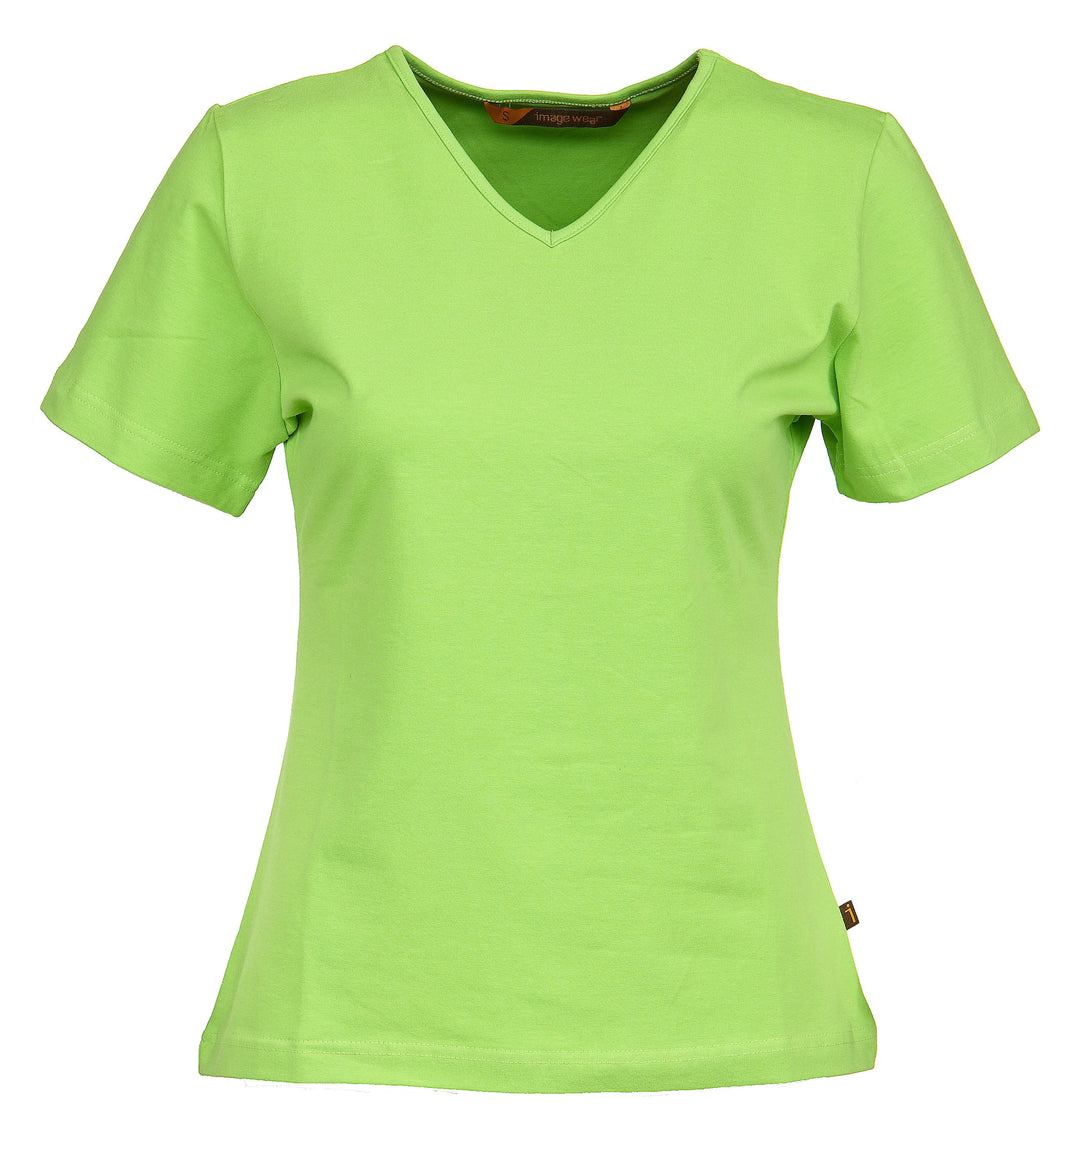 Naisten lyhythihainen limenvihreä T-paita v-pääntiellä. Malli on aavistuksen tyköistuva. 